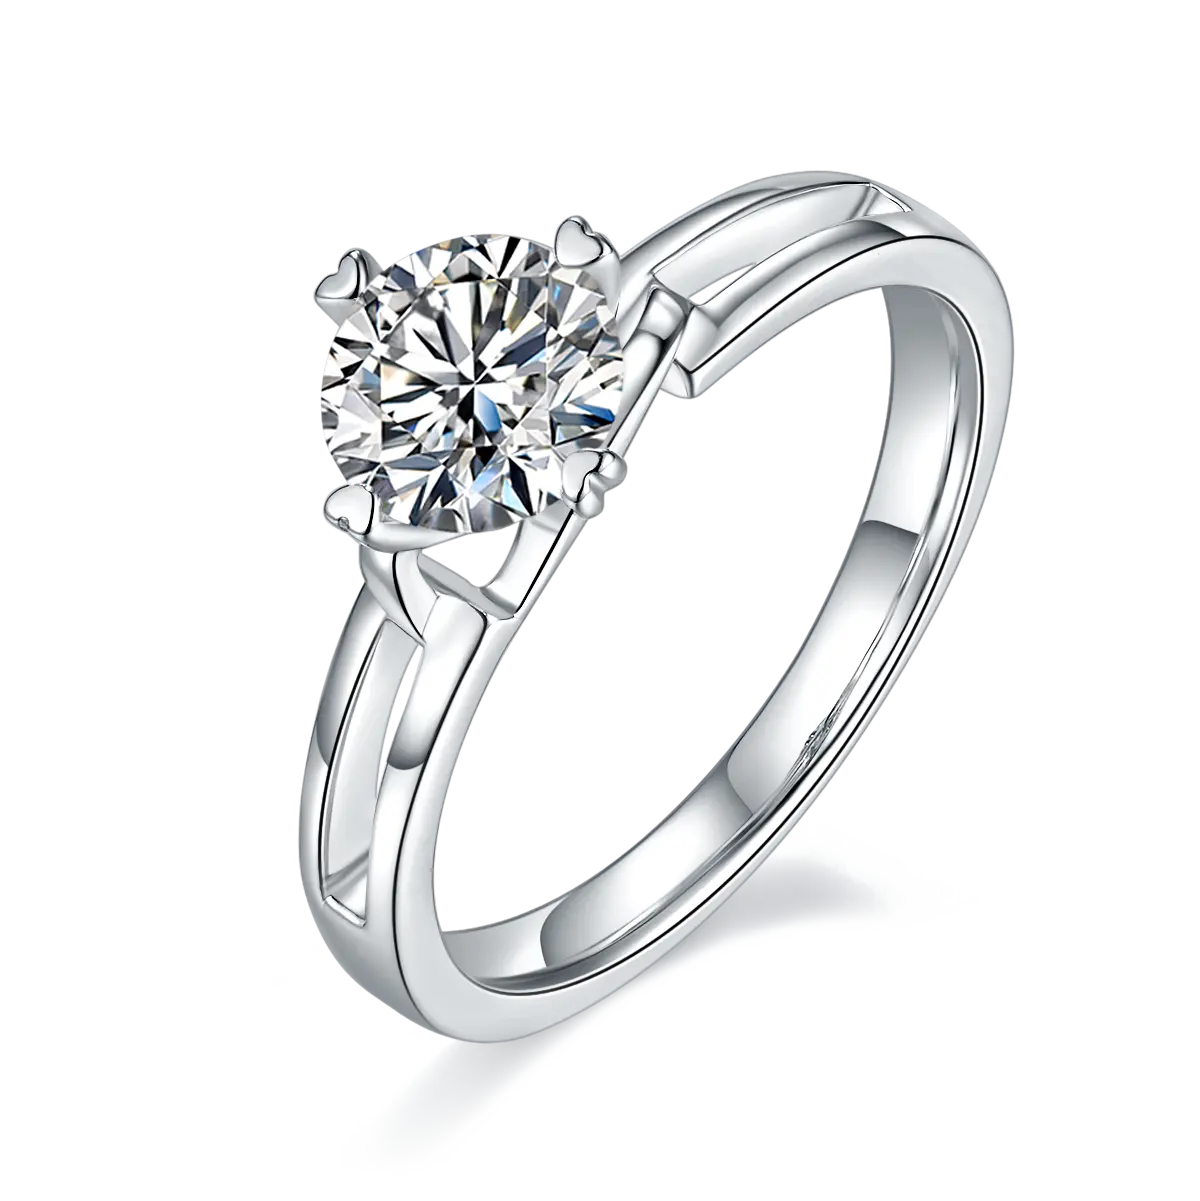 Высокое качество-Женские синтетические бриллианты кольца 1 карат VVS Муассанит Косынка, кольцо для помолвки, свадьбы